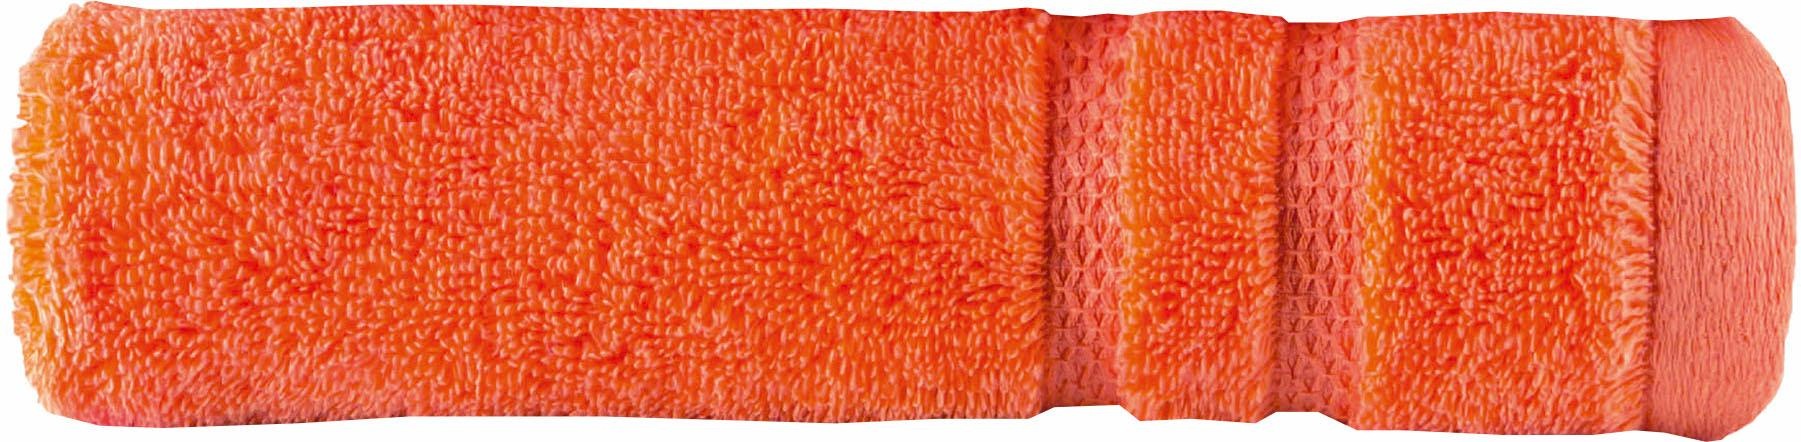 Egeria Handtuch »Micro Touch«, (1 St.), Streifenbordüre, extrem saugfähig & flauschig, 100% Baumwolle